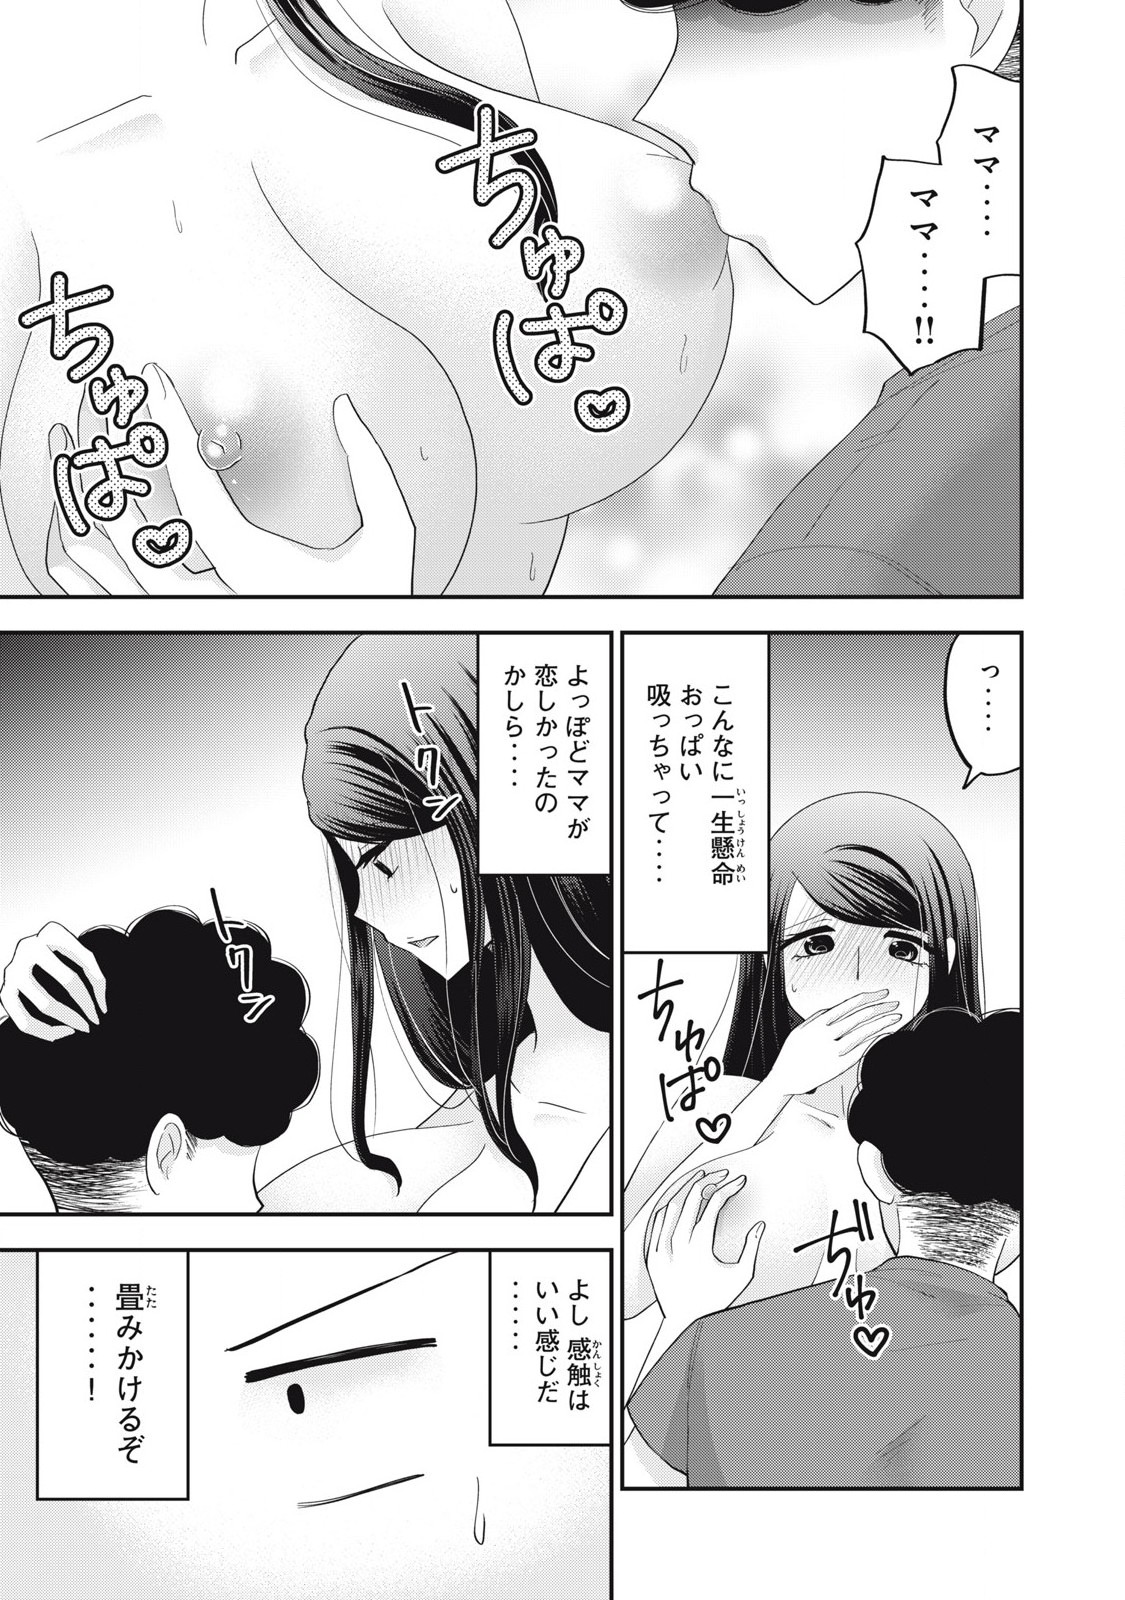 Yumeutsutsu no Hana no Sono - Chapter 26 - Page 9